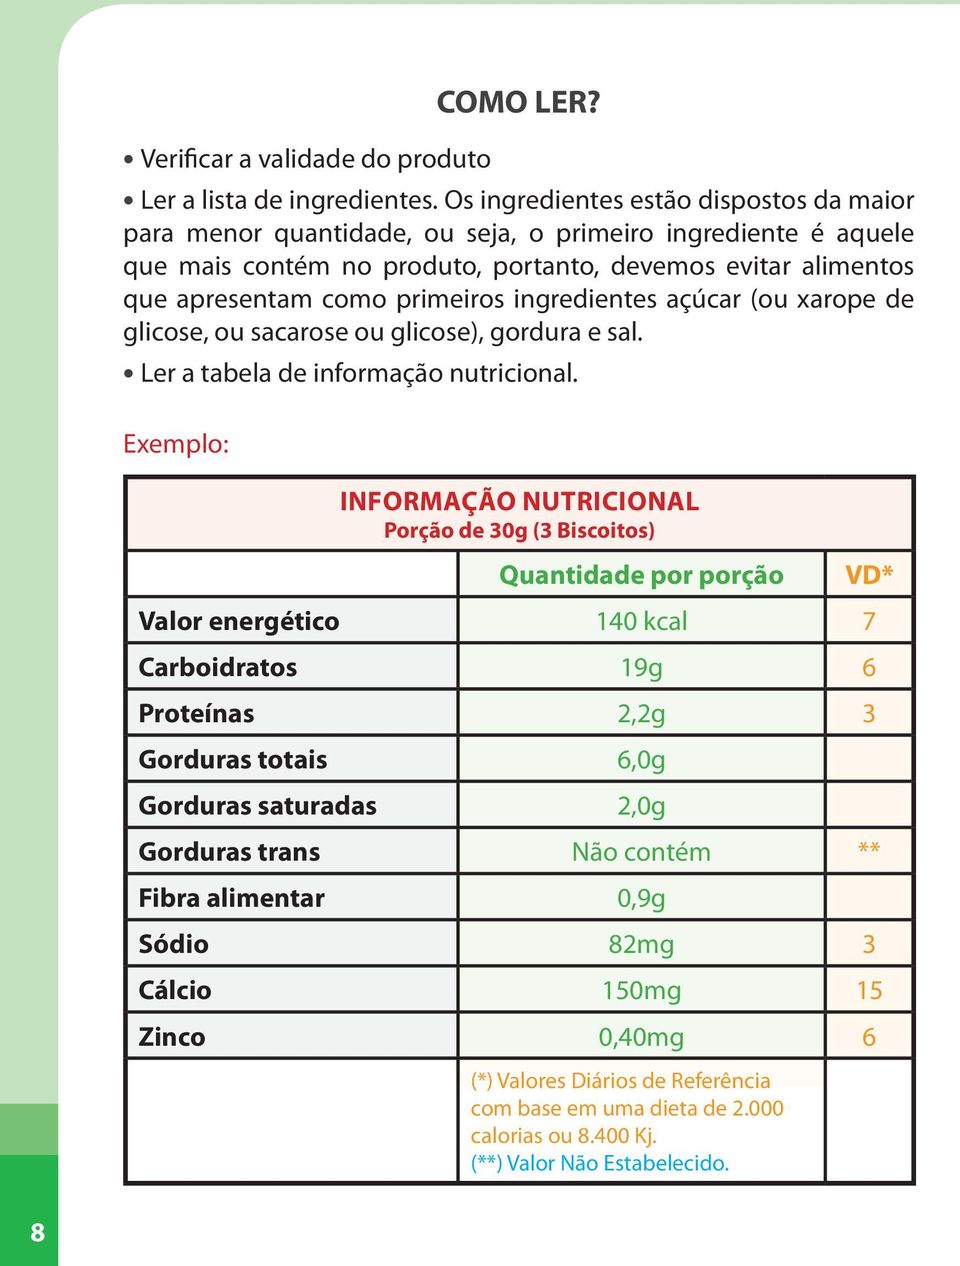 ingredientes açúcar (ou xarope de glicose, ou sacarose ou glicose), gordura e sal. Ler a tabela de informação nutricional.